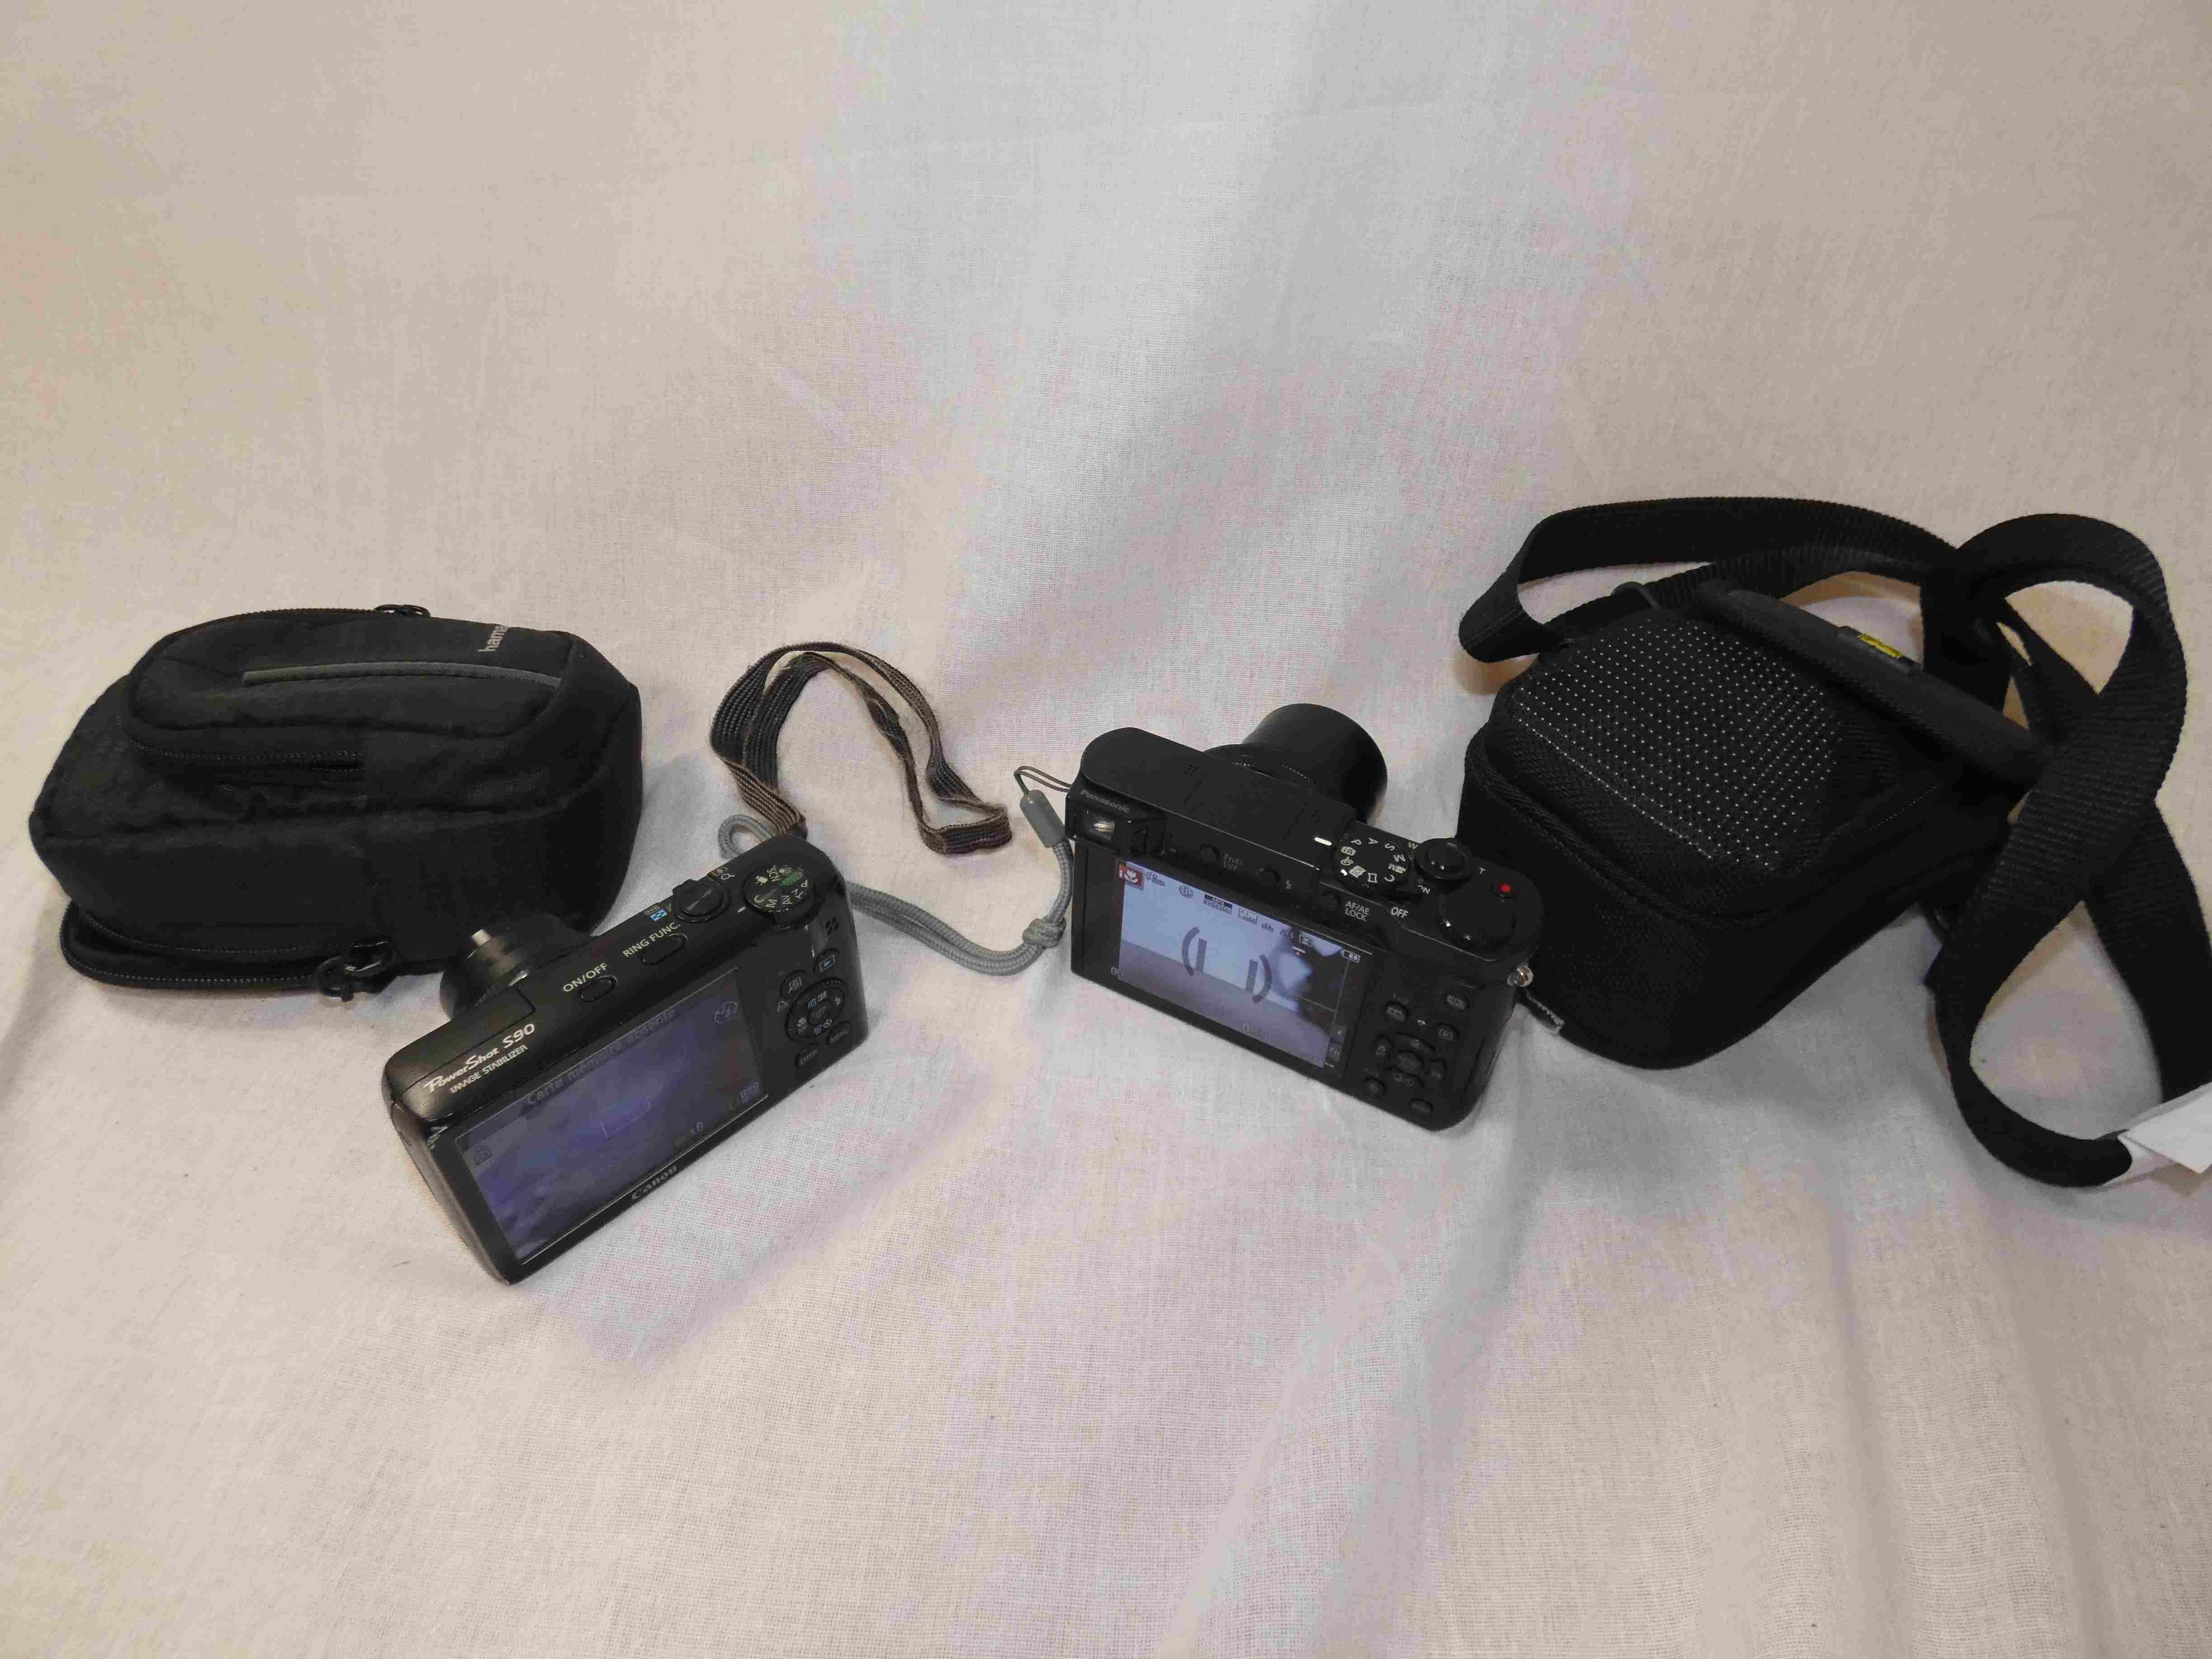 Appareil photo numérique compact Sony en Vente aux Enchères en Ligne